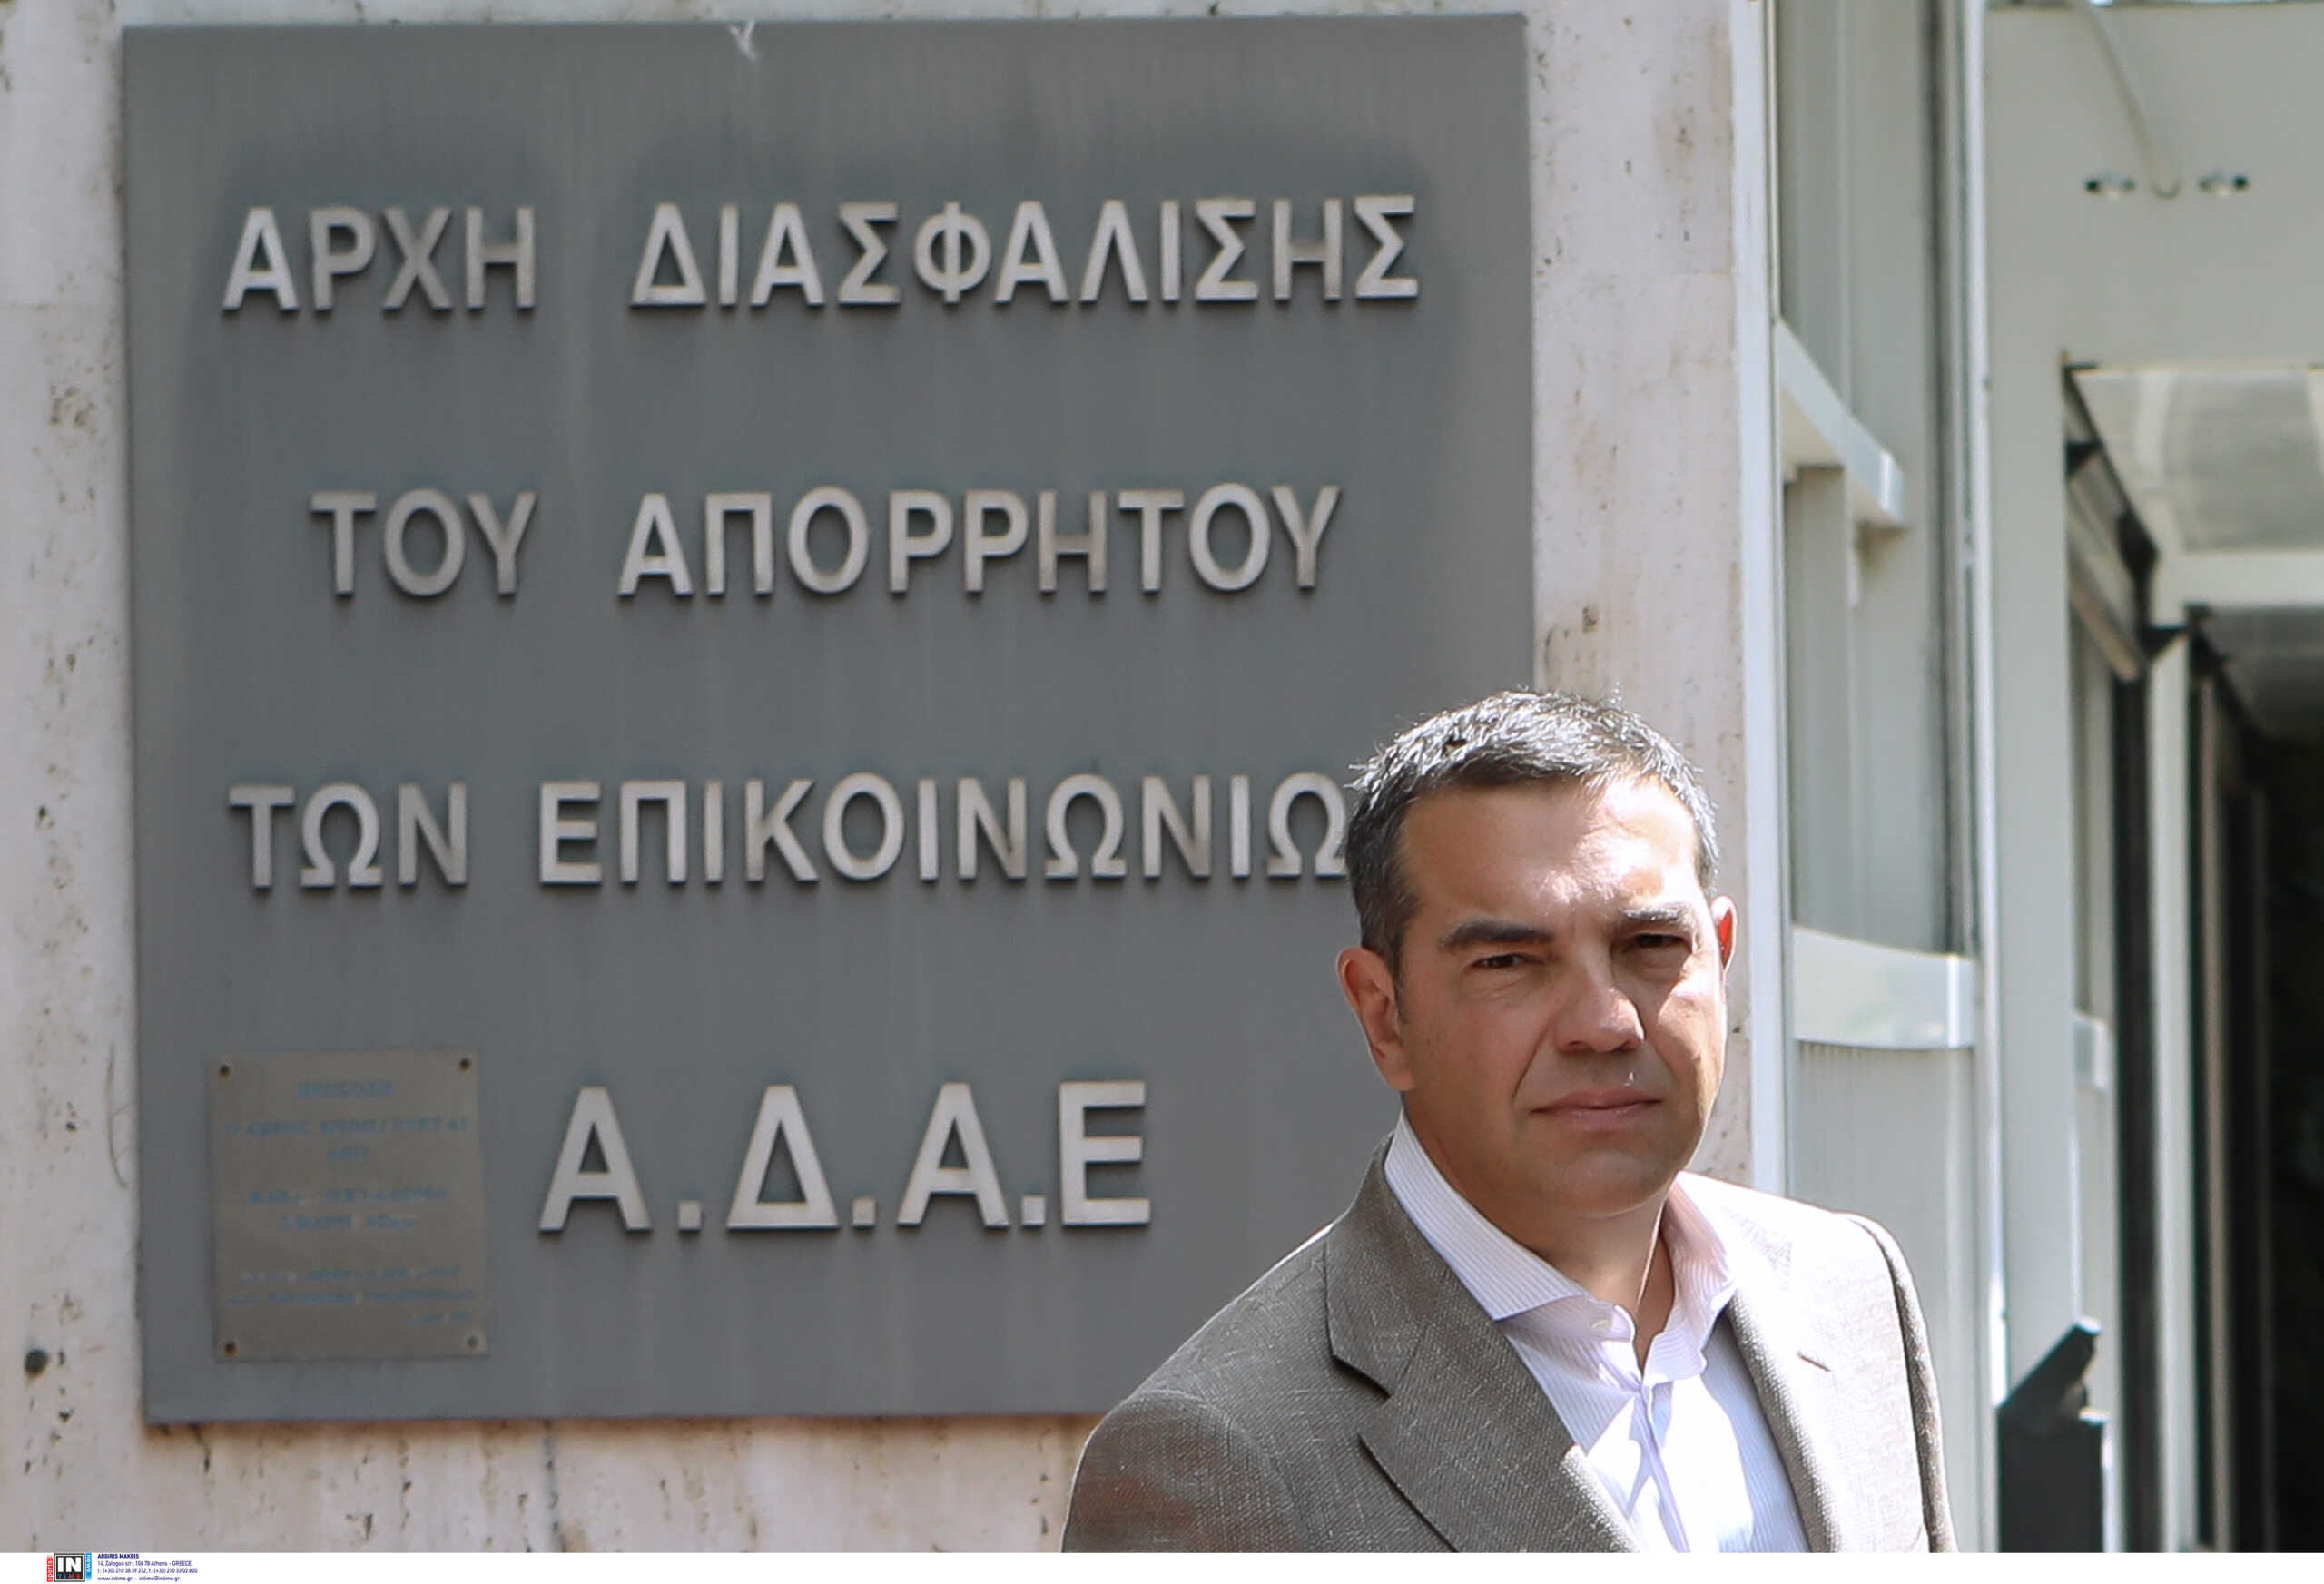 ΣΥΡΙΖΑ: Η κυβέρνηση προσπαθεί να παραγκωνίσει την ΑΔΑΕ – Προσπάθεια συγκάλυψης του σκανδάλου